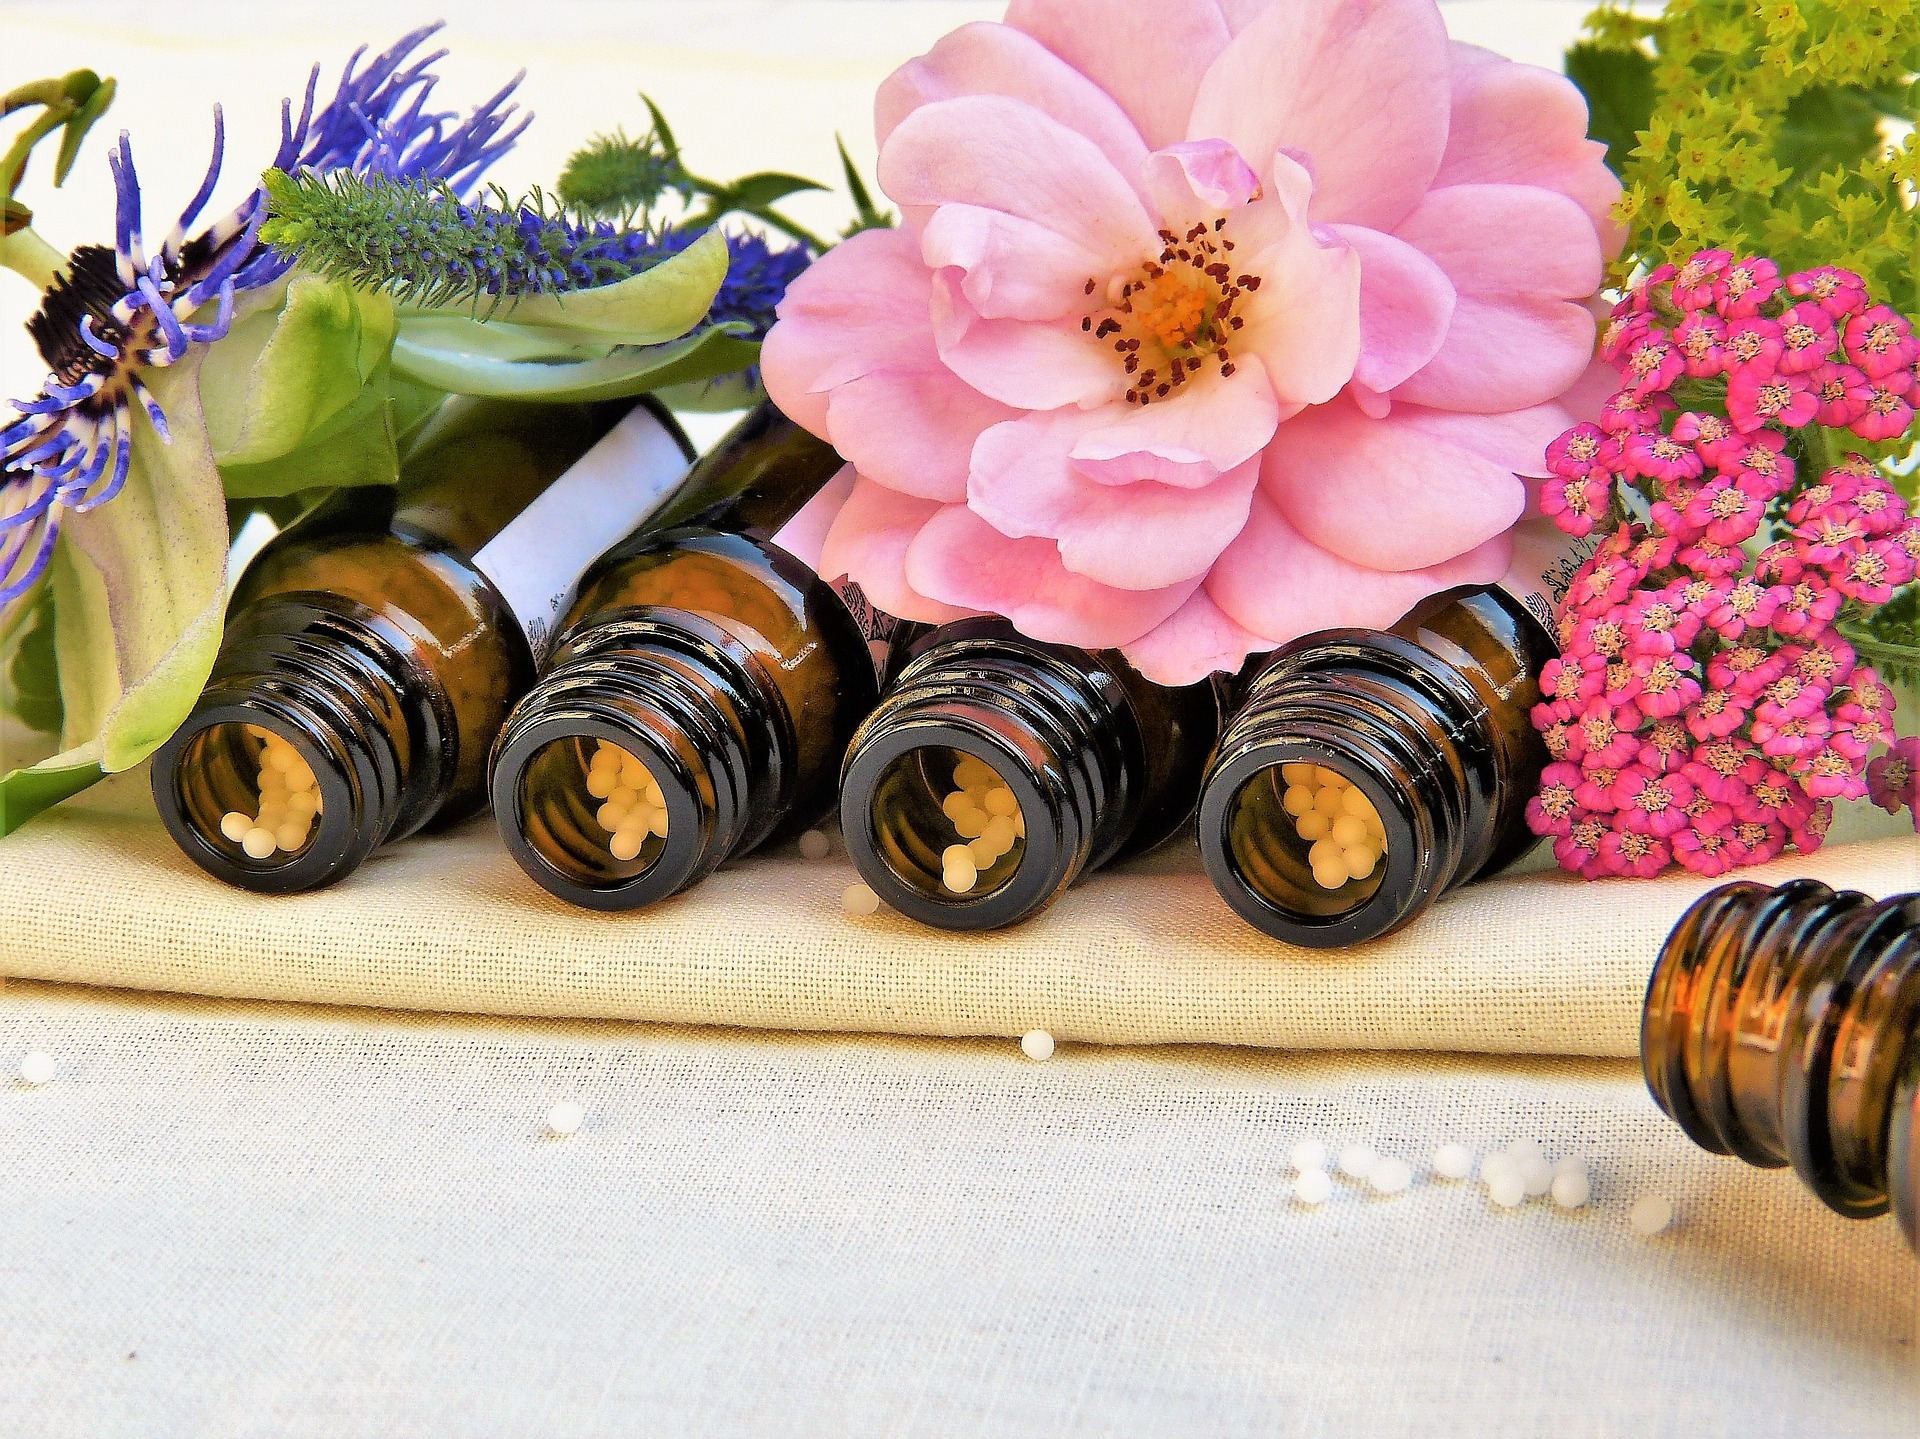 Co se hodí vědět, léčíte-li sebe a své děti homeopaticky